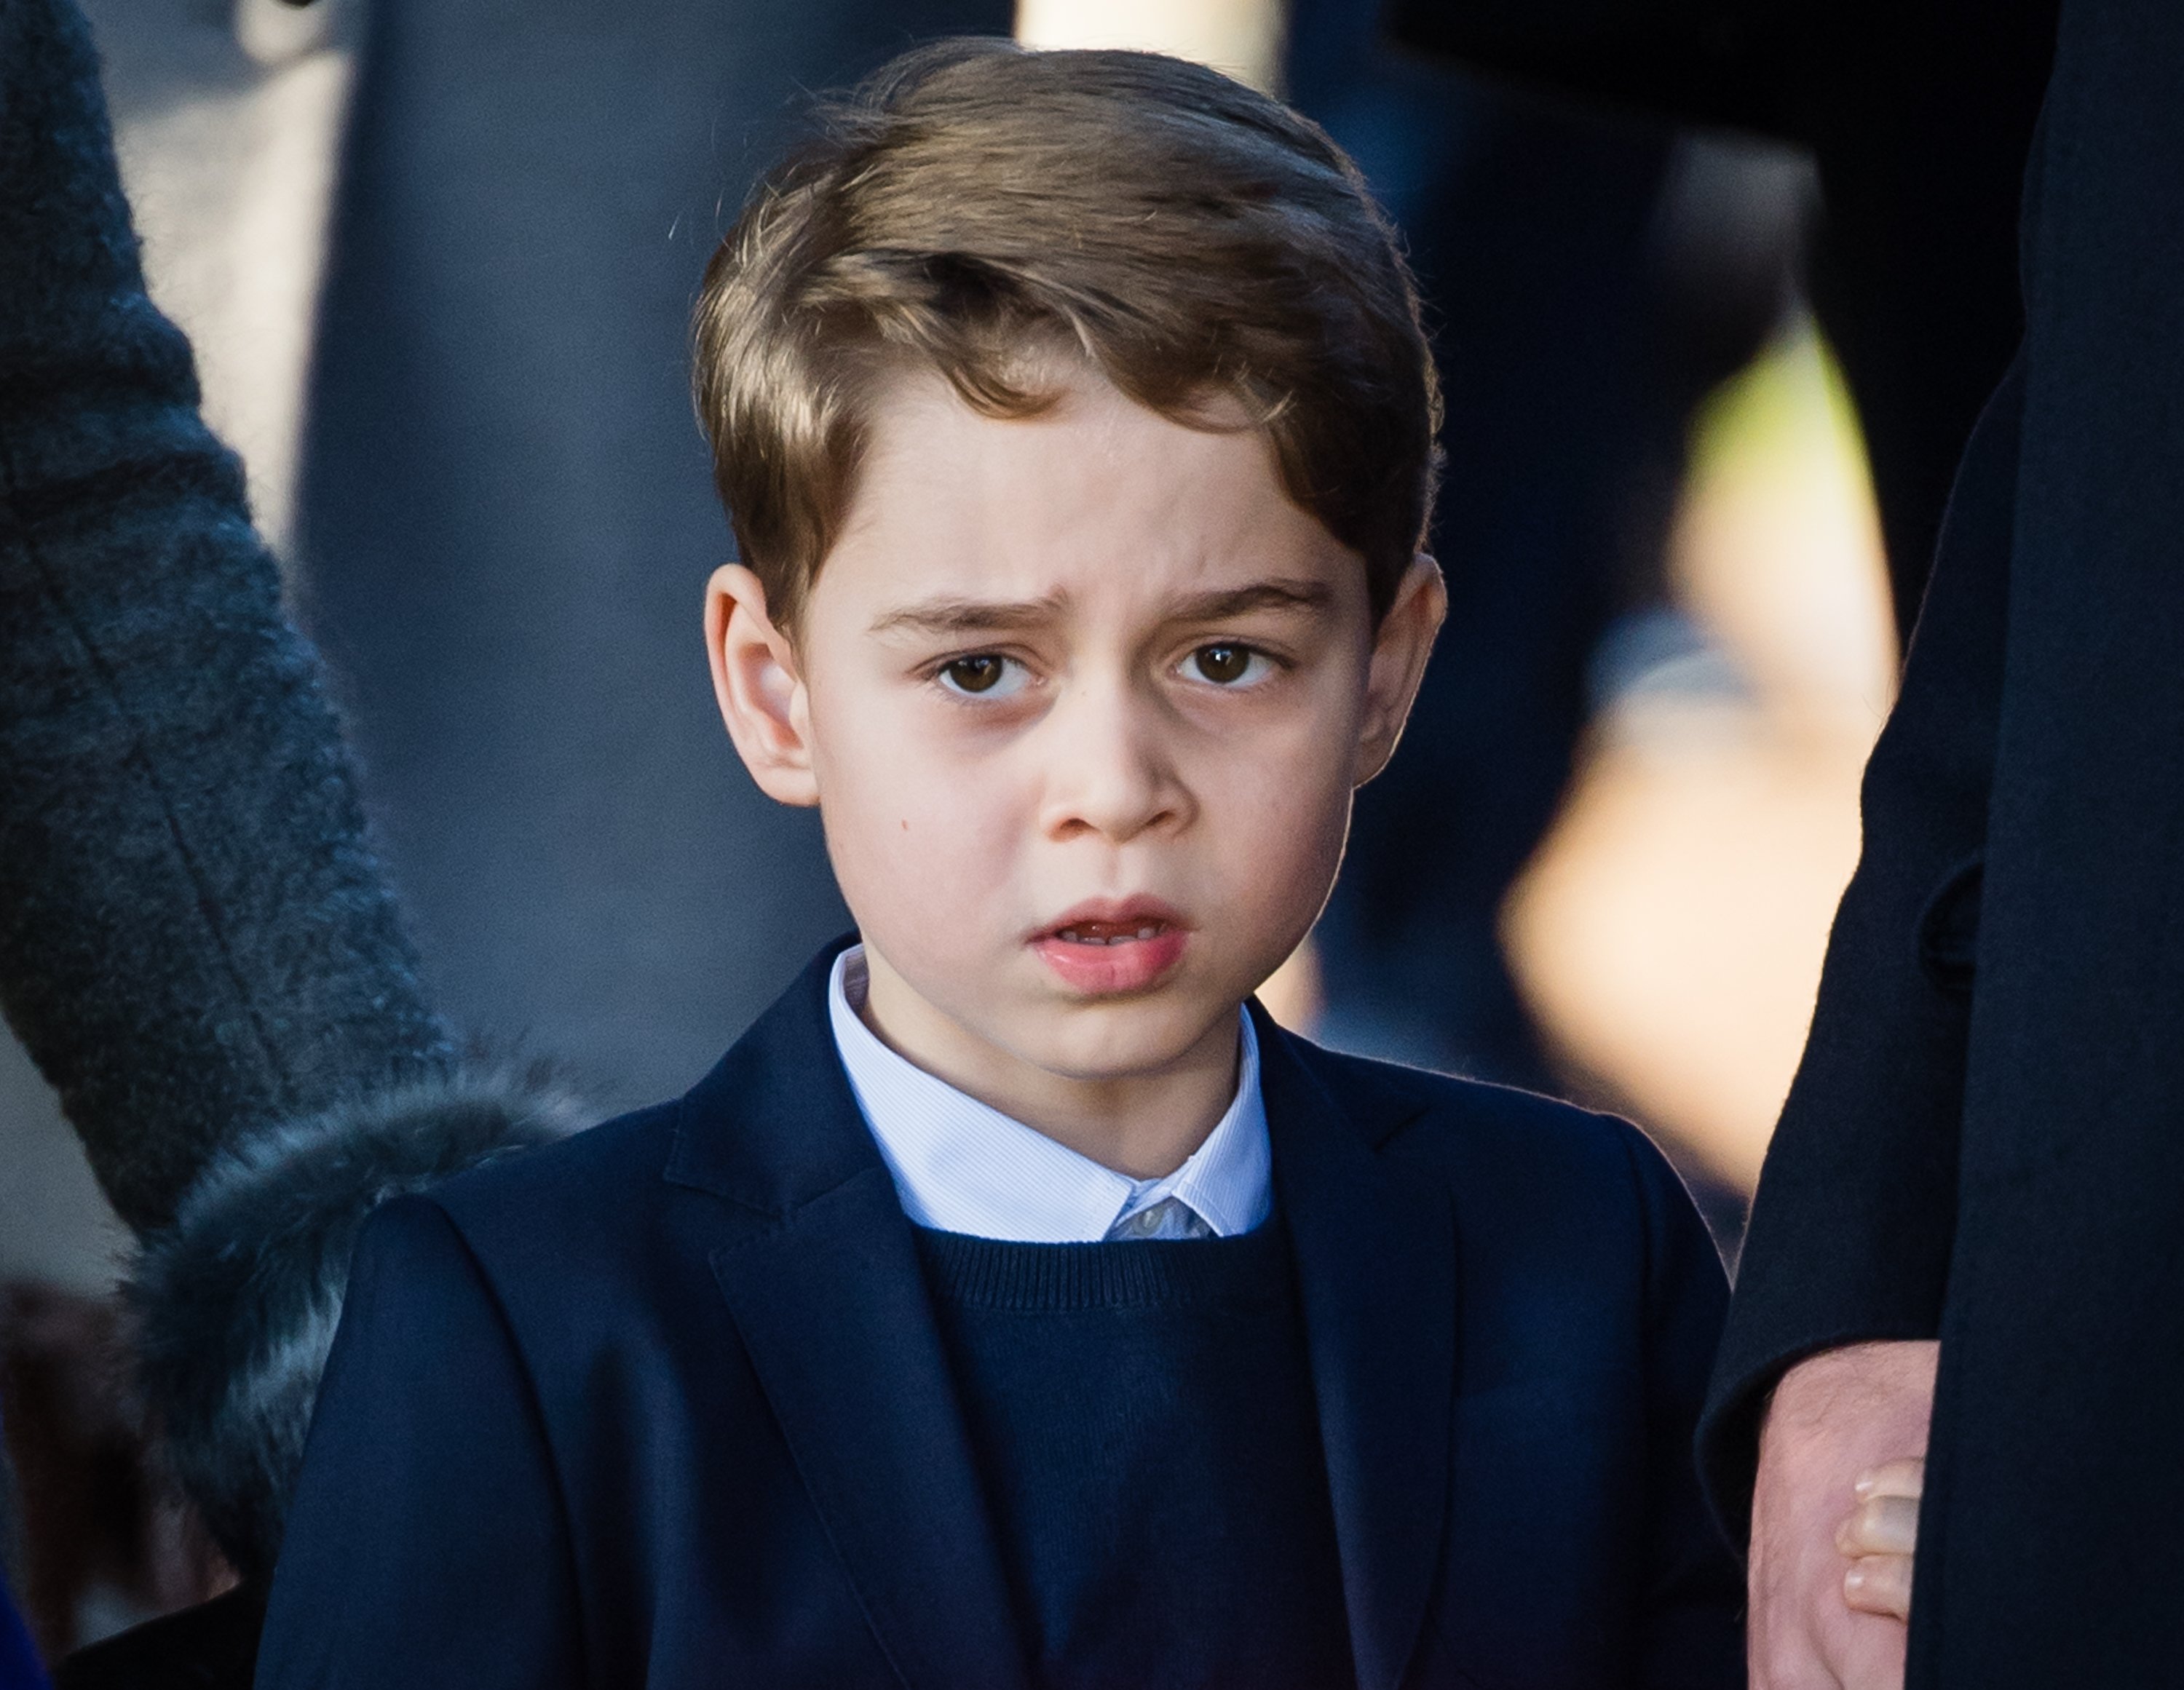 El príncipe George de Cambridge asiste al servicio religioso del día de Navidad en la Iglesia de St Mary Magdalene en la finca de Sandringham, el 25 de diciembre de 2019 en King's Lynn, Reino Unido. | Foto: Getty Images